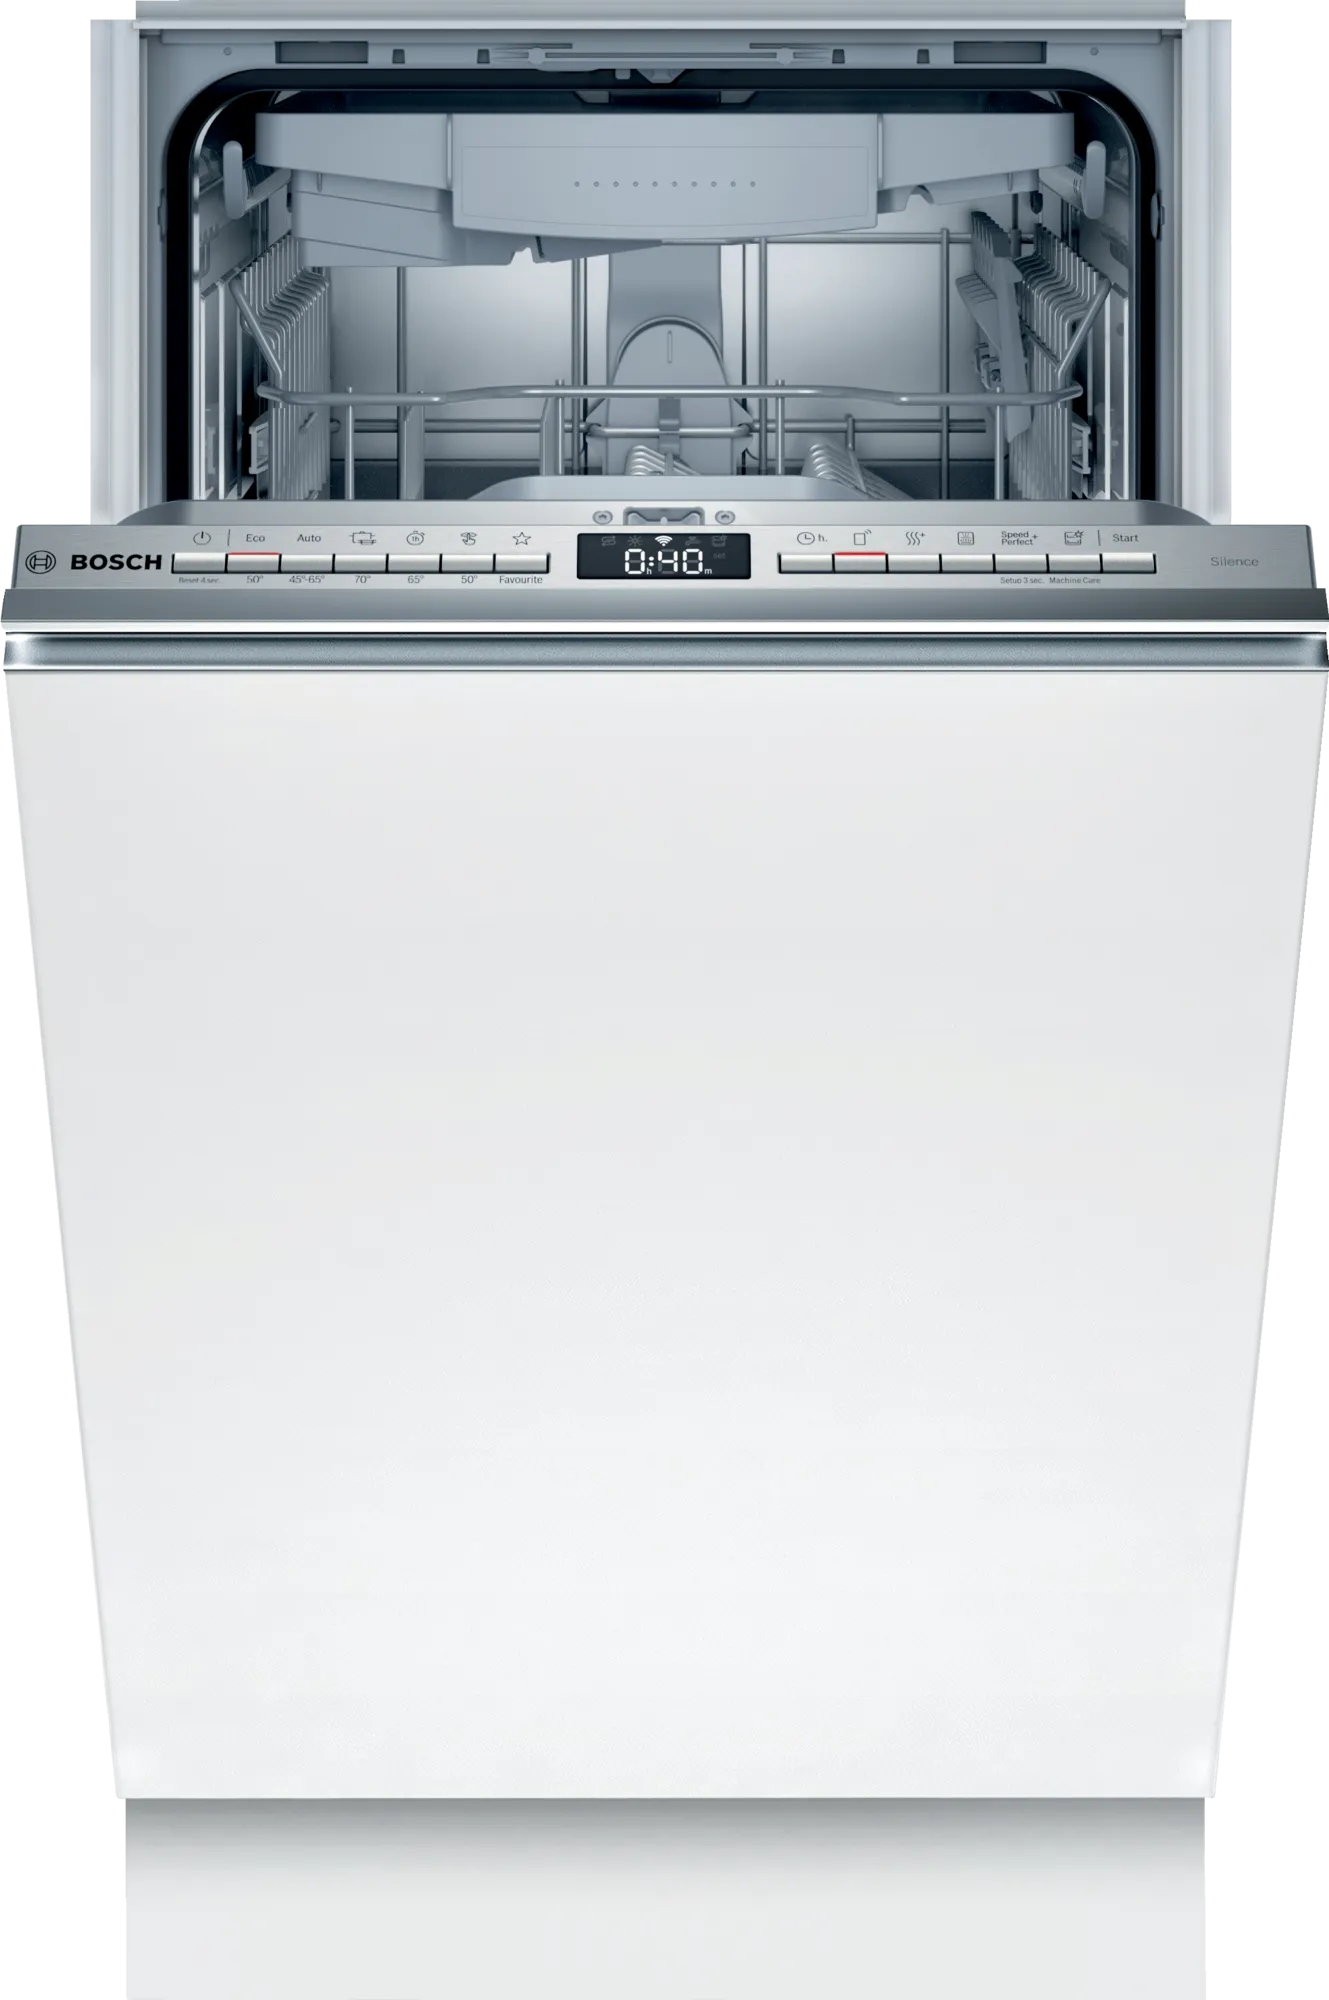 Посудомойка bosch купить. Посудомоечная машина бош 60 см встраиваемая. Gorenje gv520e10s. Smv6ecx51e. Встраиваемая посудомоечная машина Bosch sgv2imx1gr.